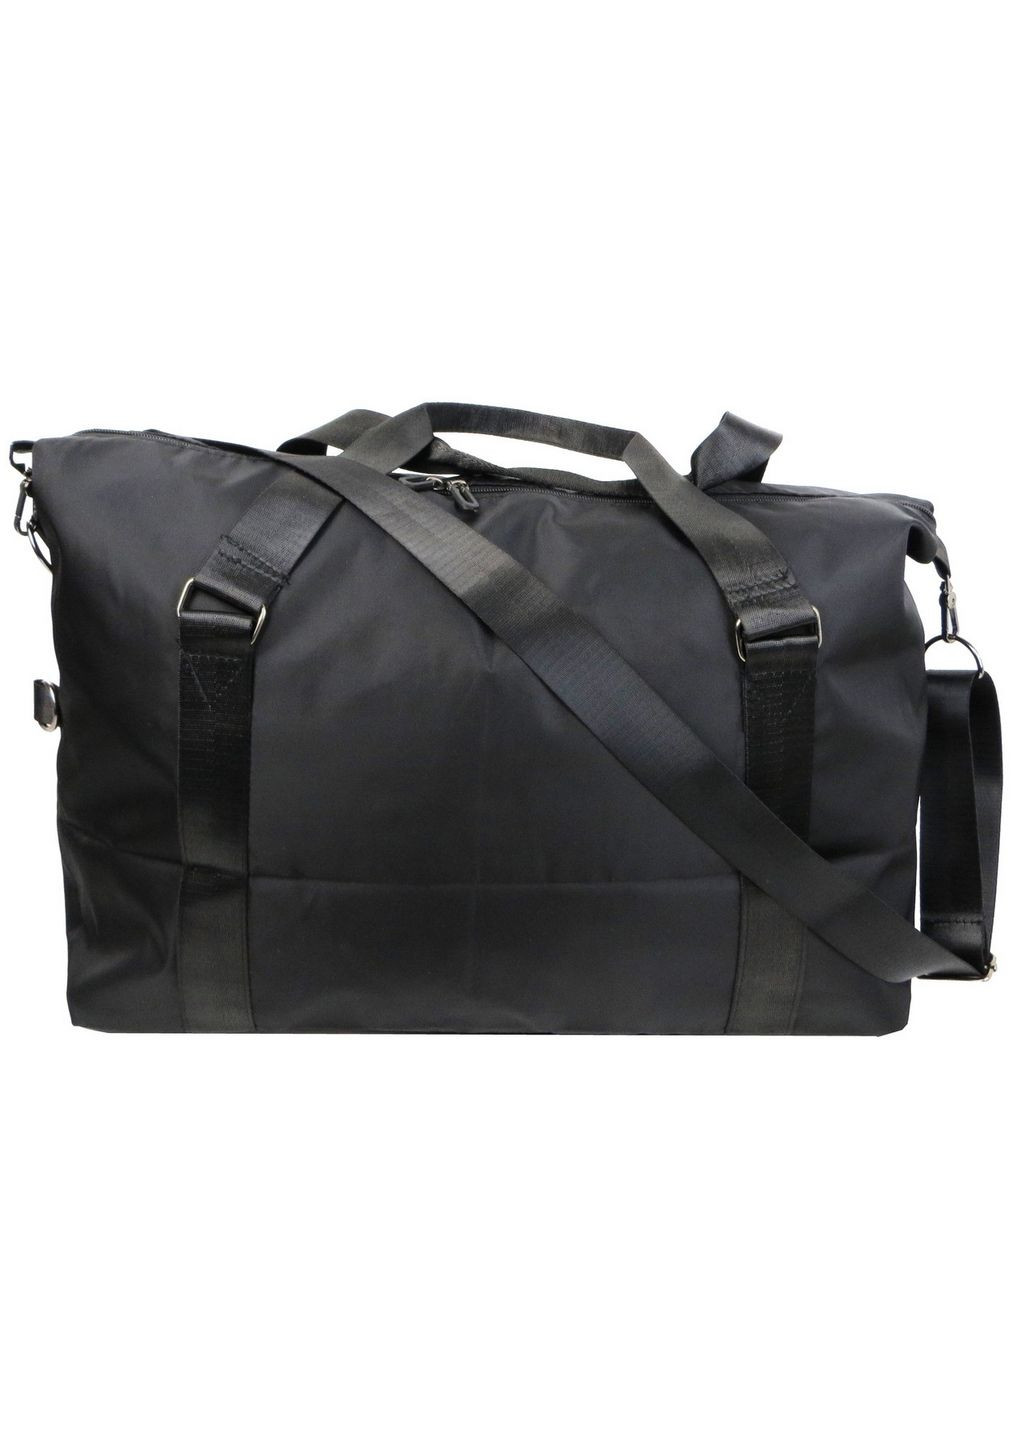 Дорожно-спортивная сумка 30L 50x30x20 см Sport fashion (289368143)